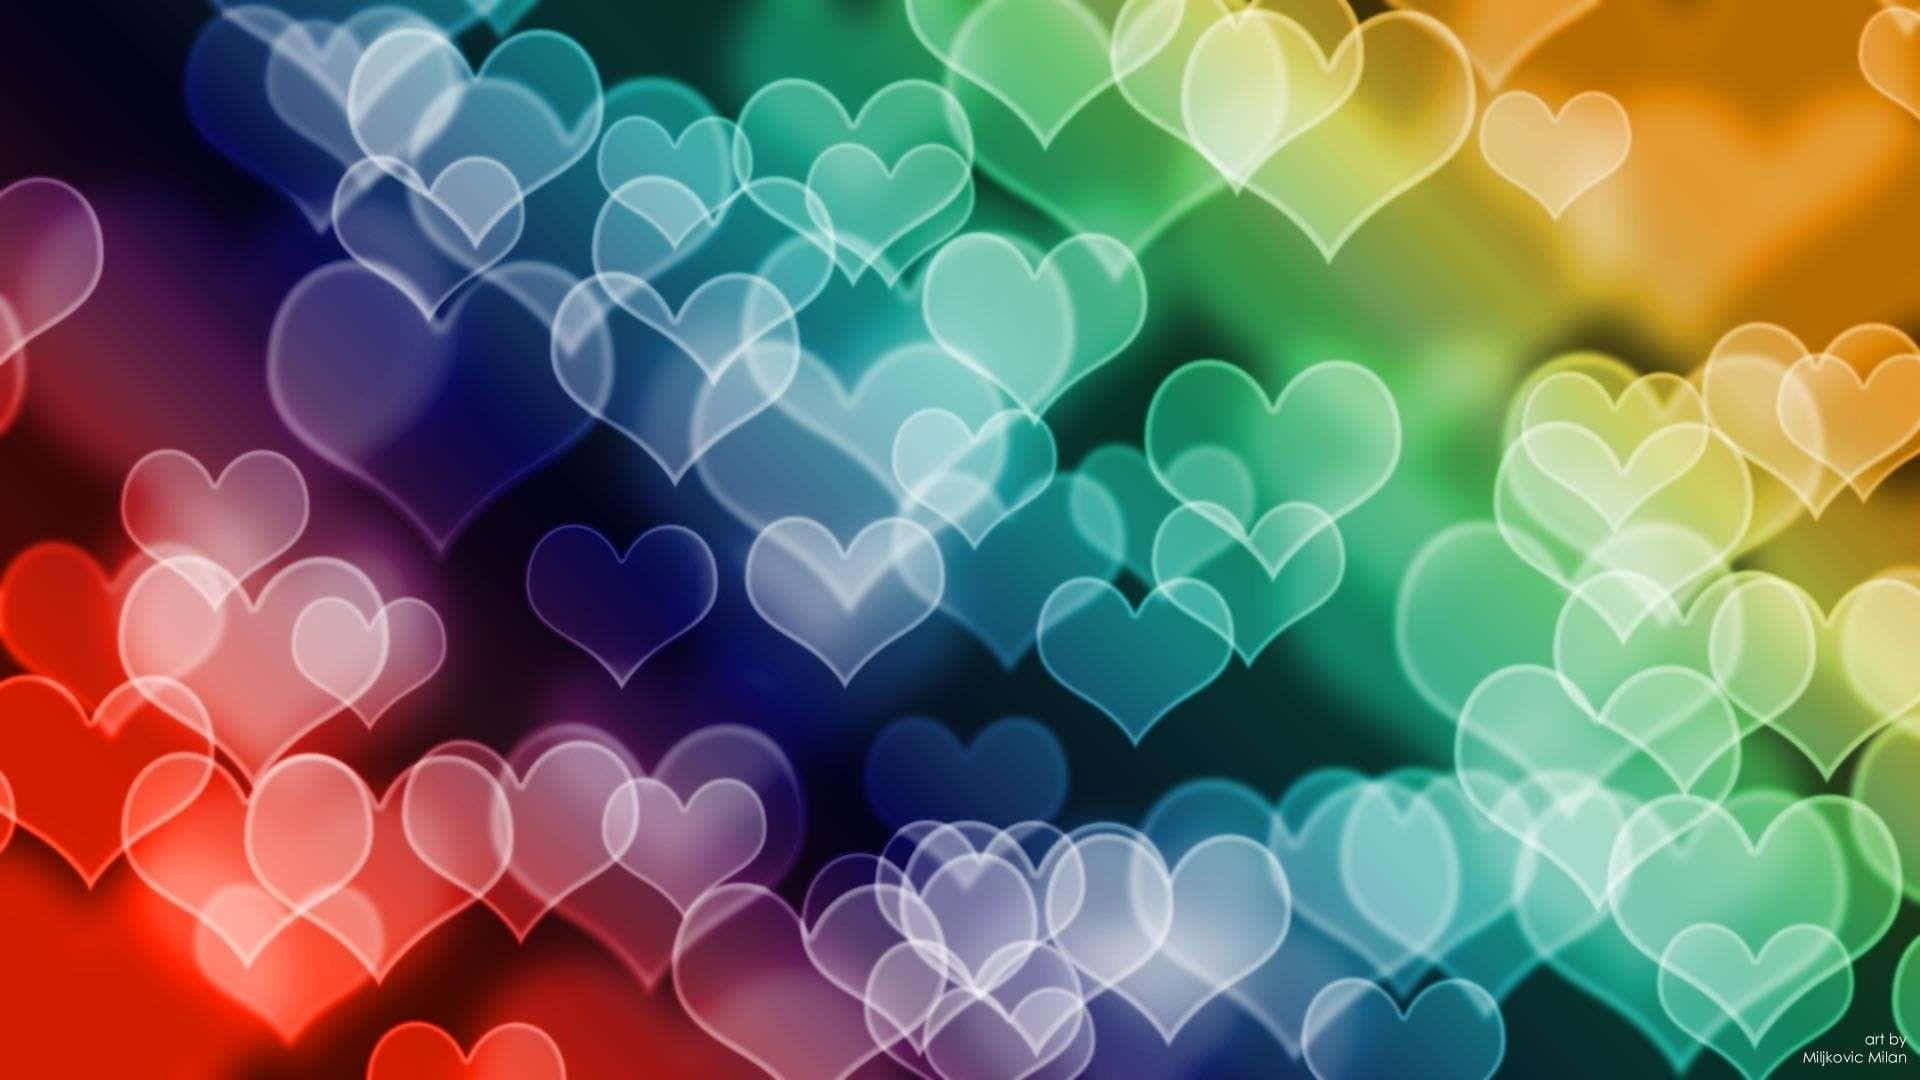 Déorgullo Al Amor Y La Diversidad Con Este Hermoso Corazón Arcoíris. Fondo de pantalla